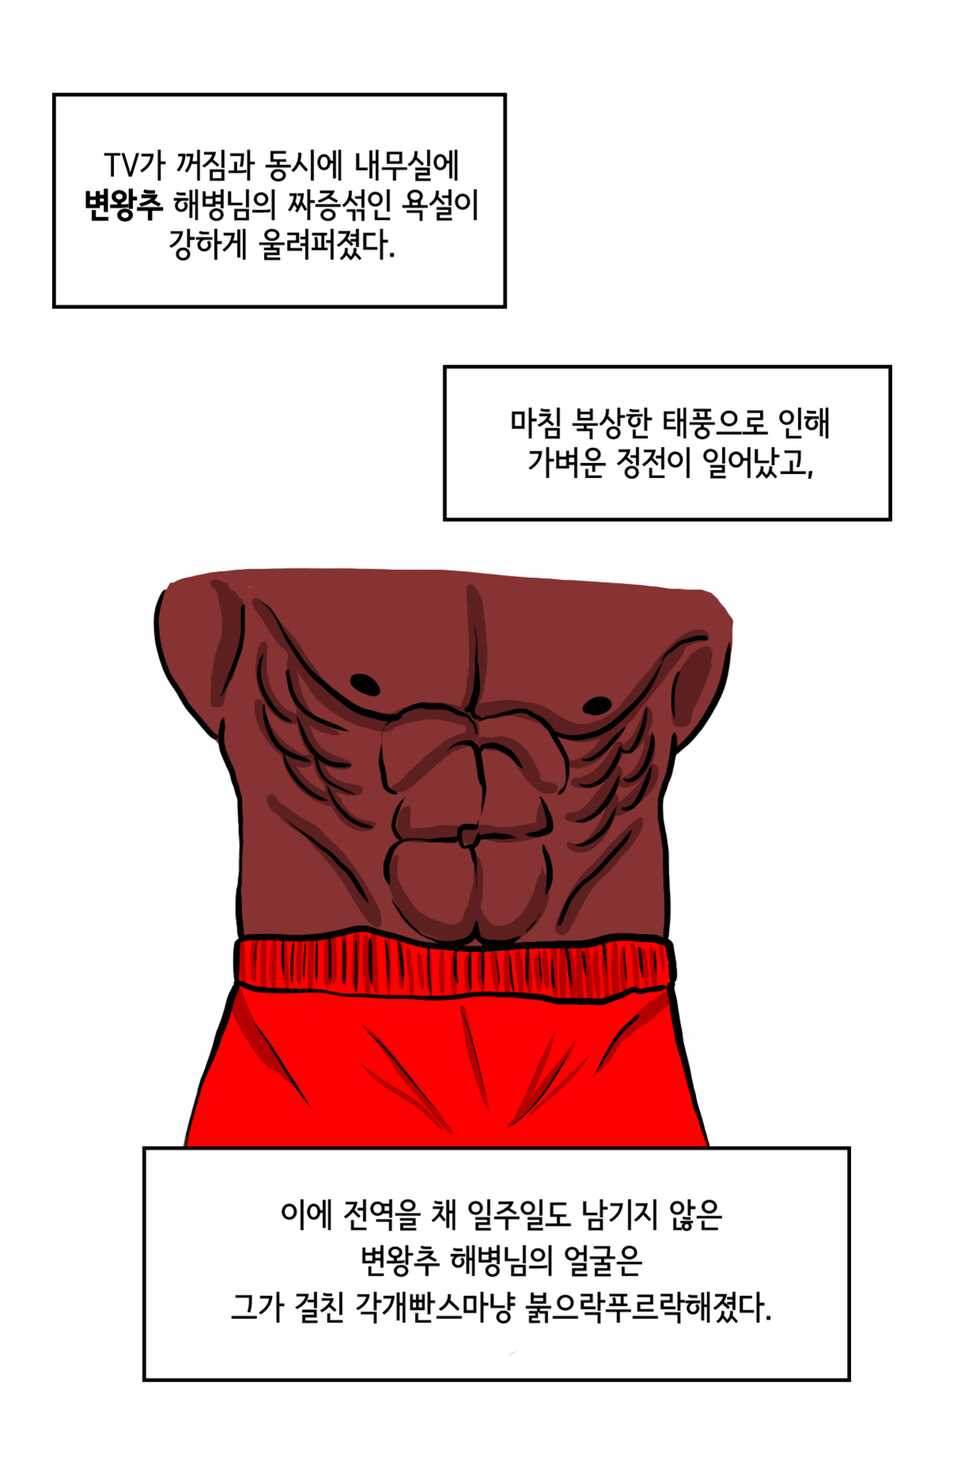 쾌흥태 해병의 성기난사 대소동 - Page 4